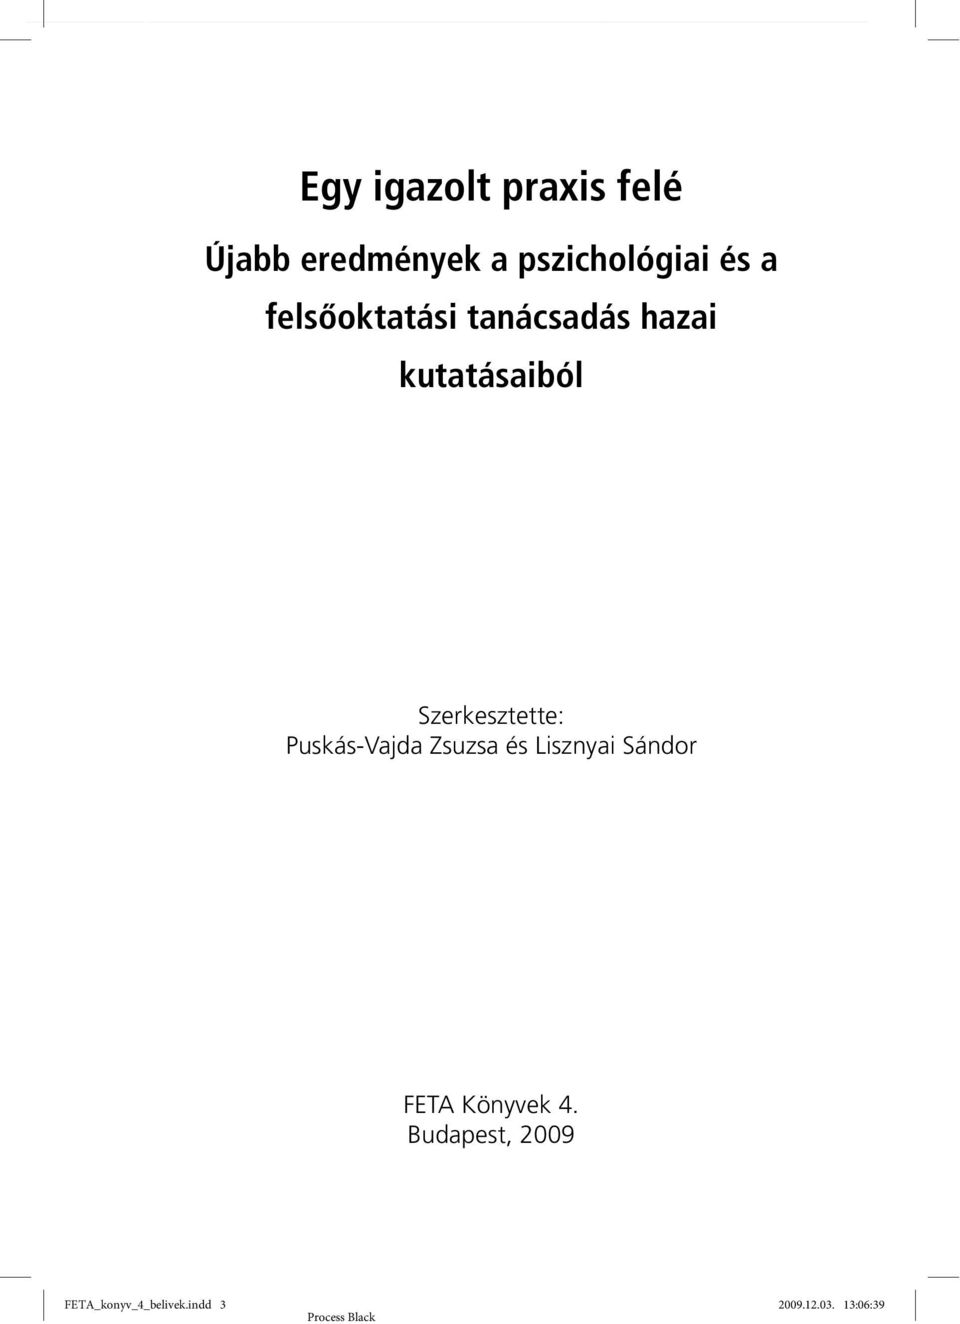 Szerkesztette: Puskás-Vajda Zsuzsa és Lisznyai Sándor FETA